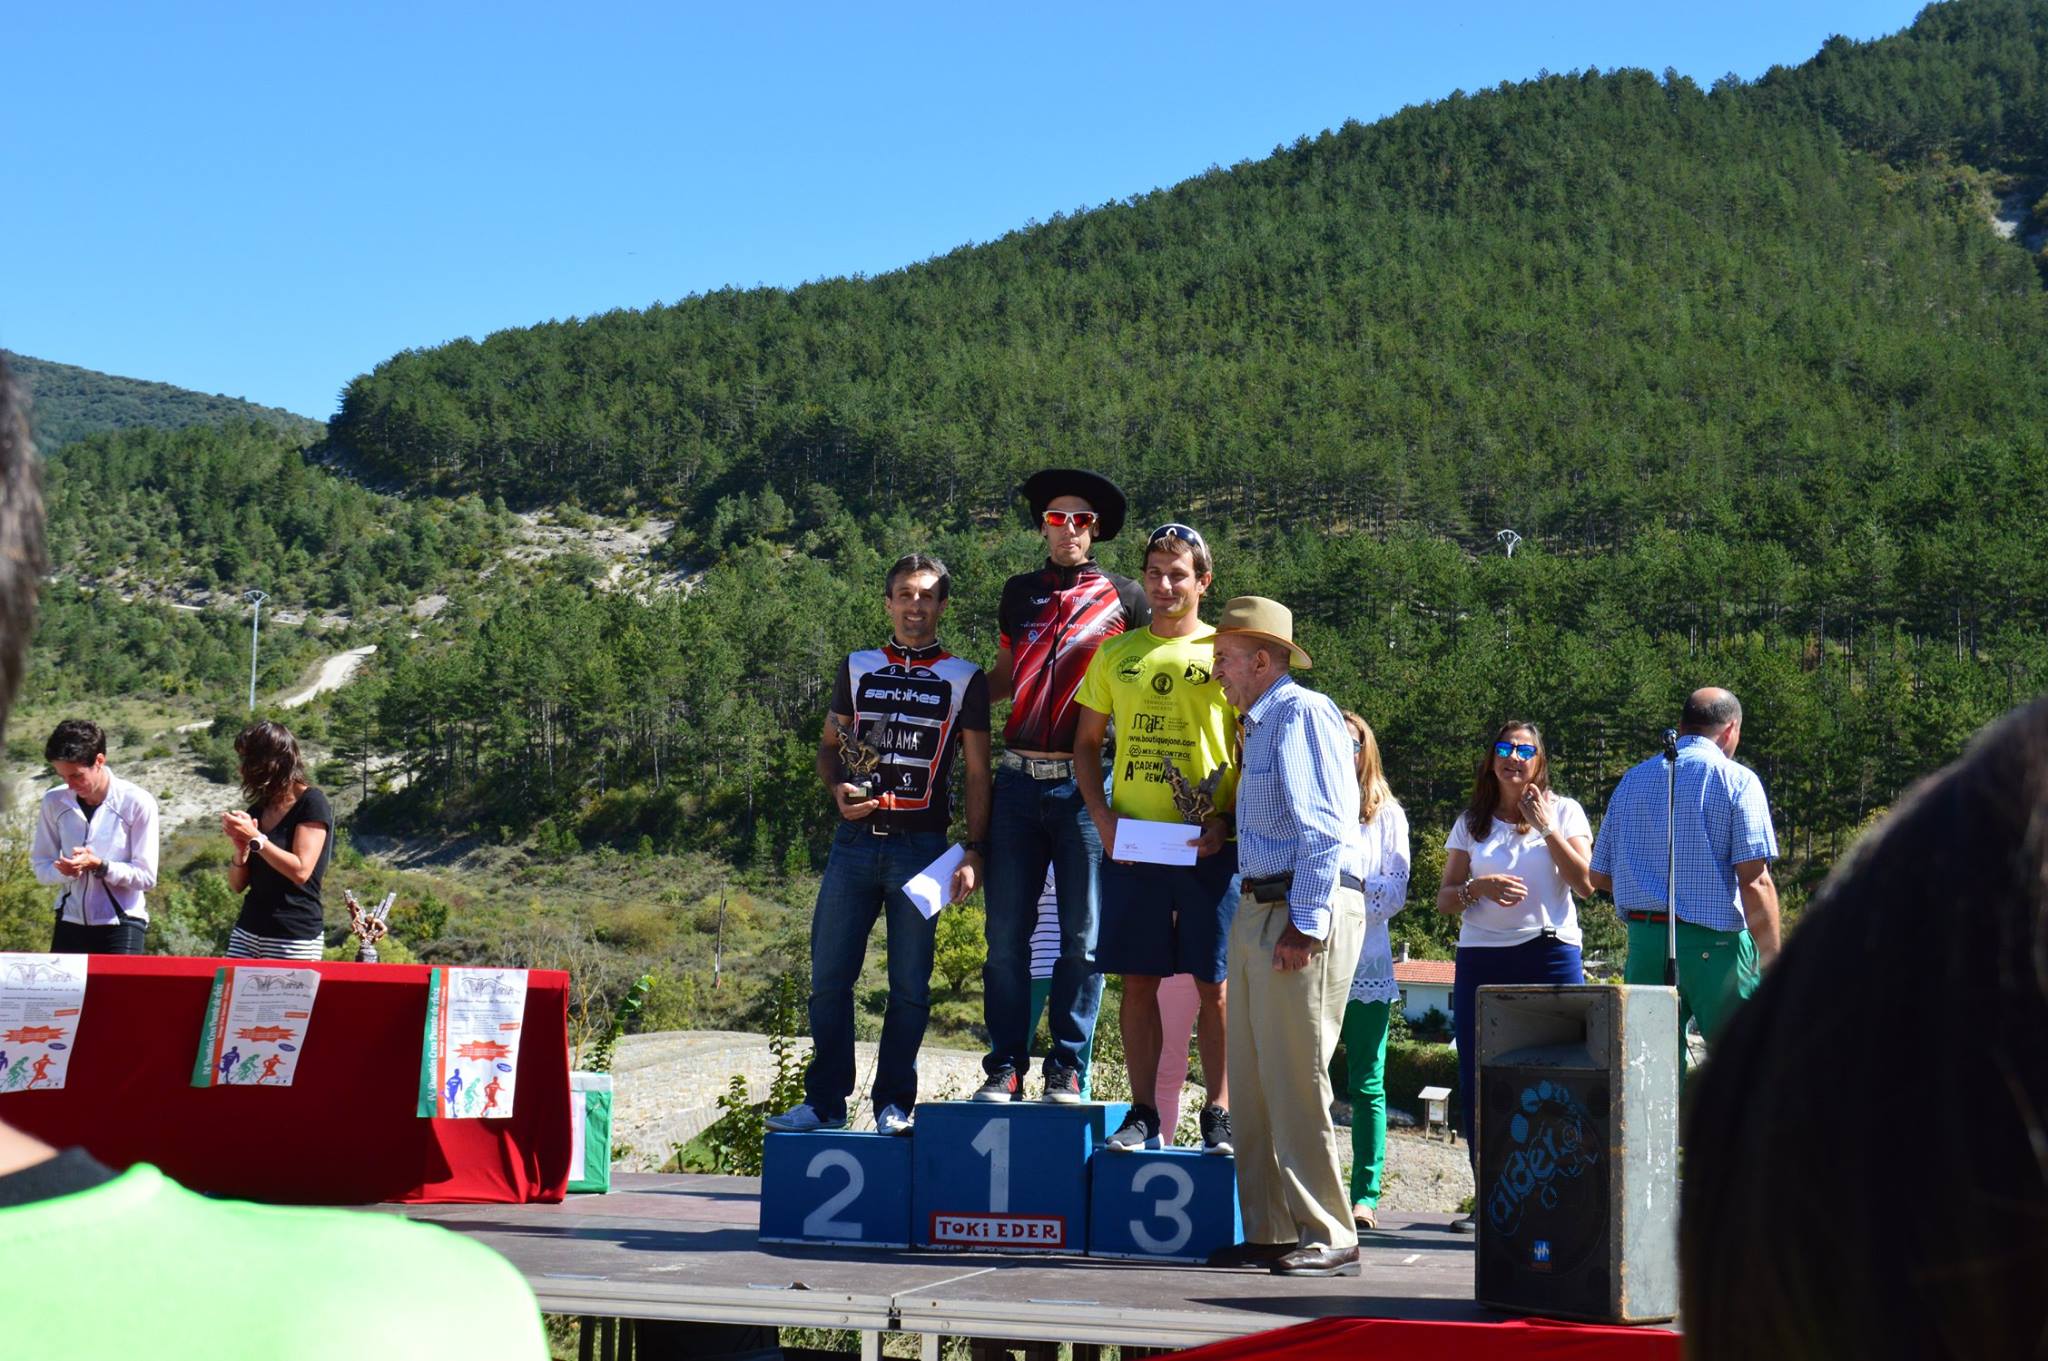 El triatleta del Club Triatlón Eresma, Rubén Ceballos, se hizo con la victoria del Duatlón Cross Puente de Aoiz